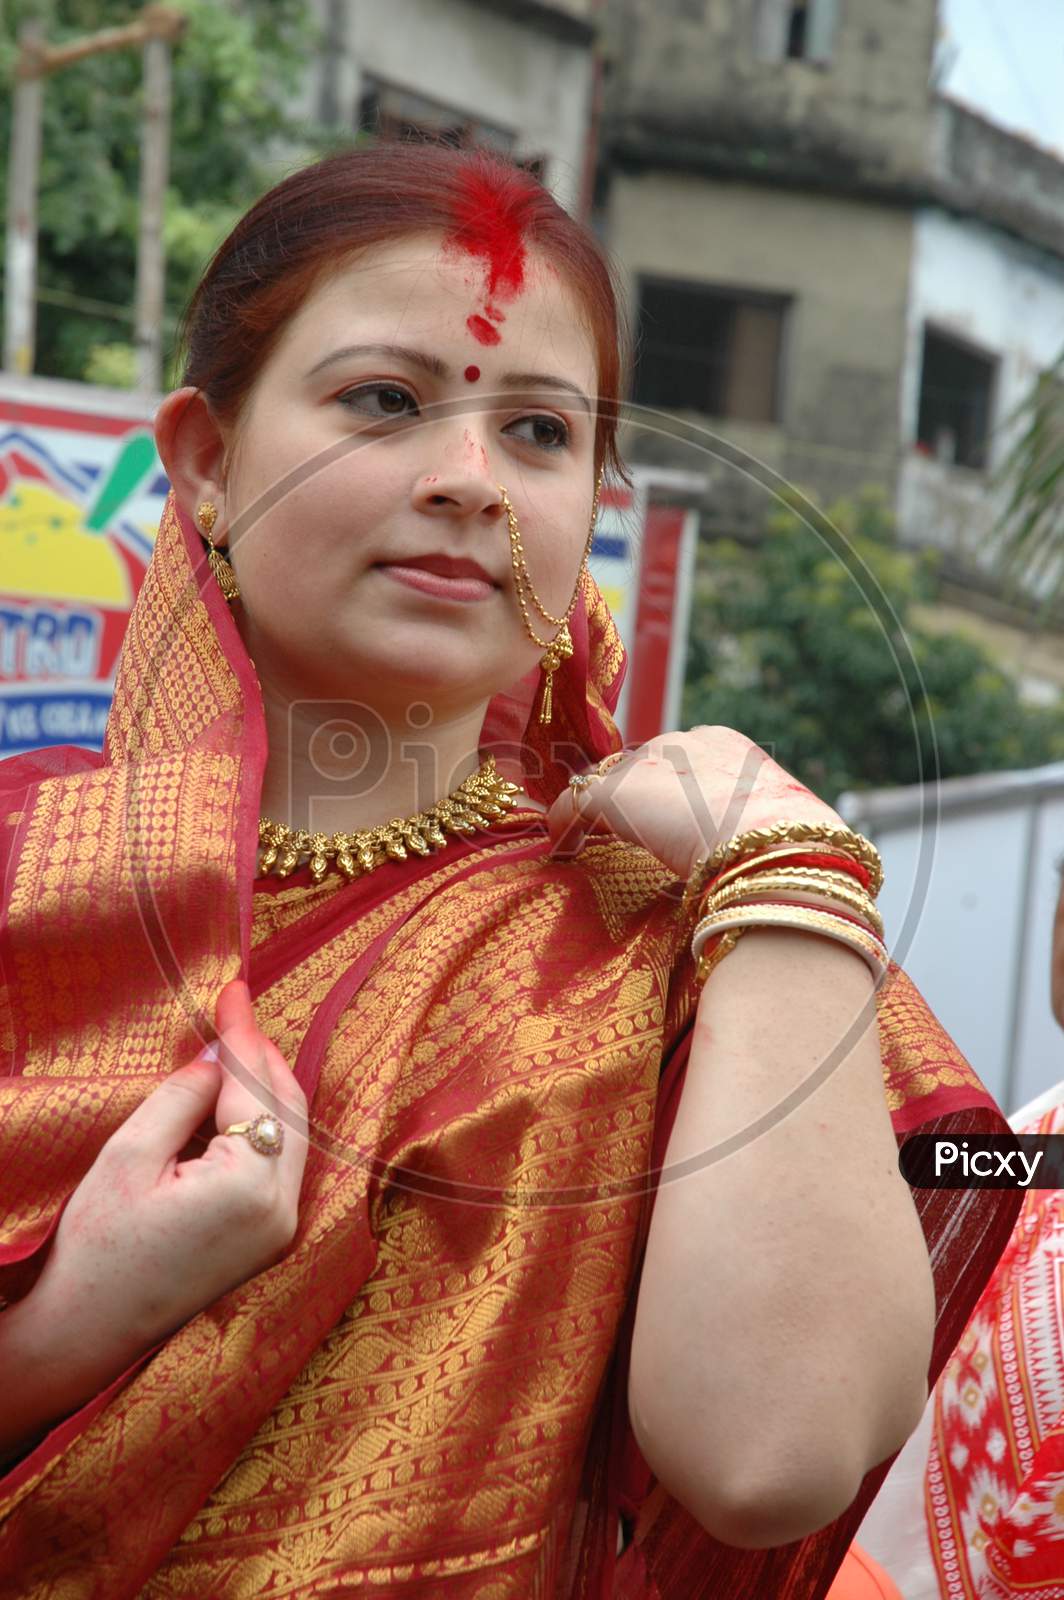 Indian Woman adjusting her saree